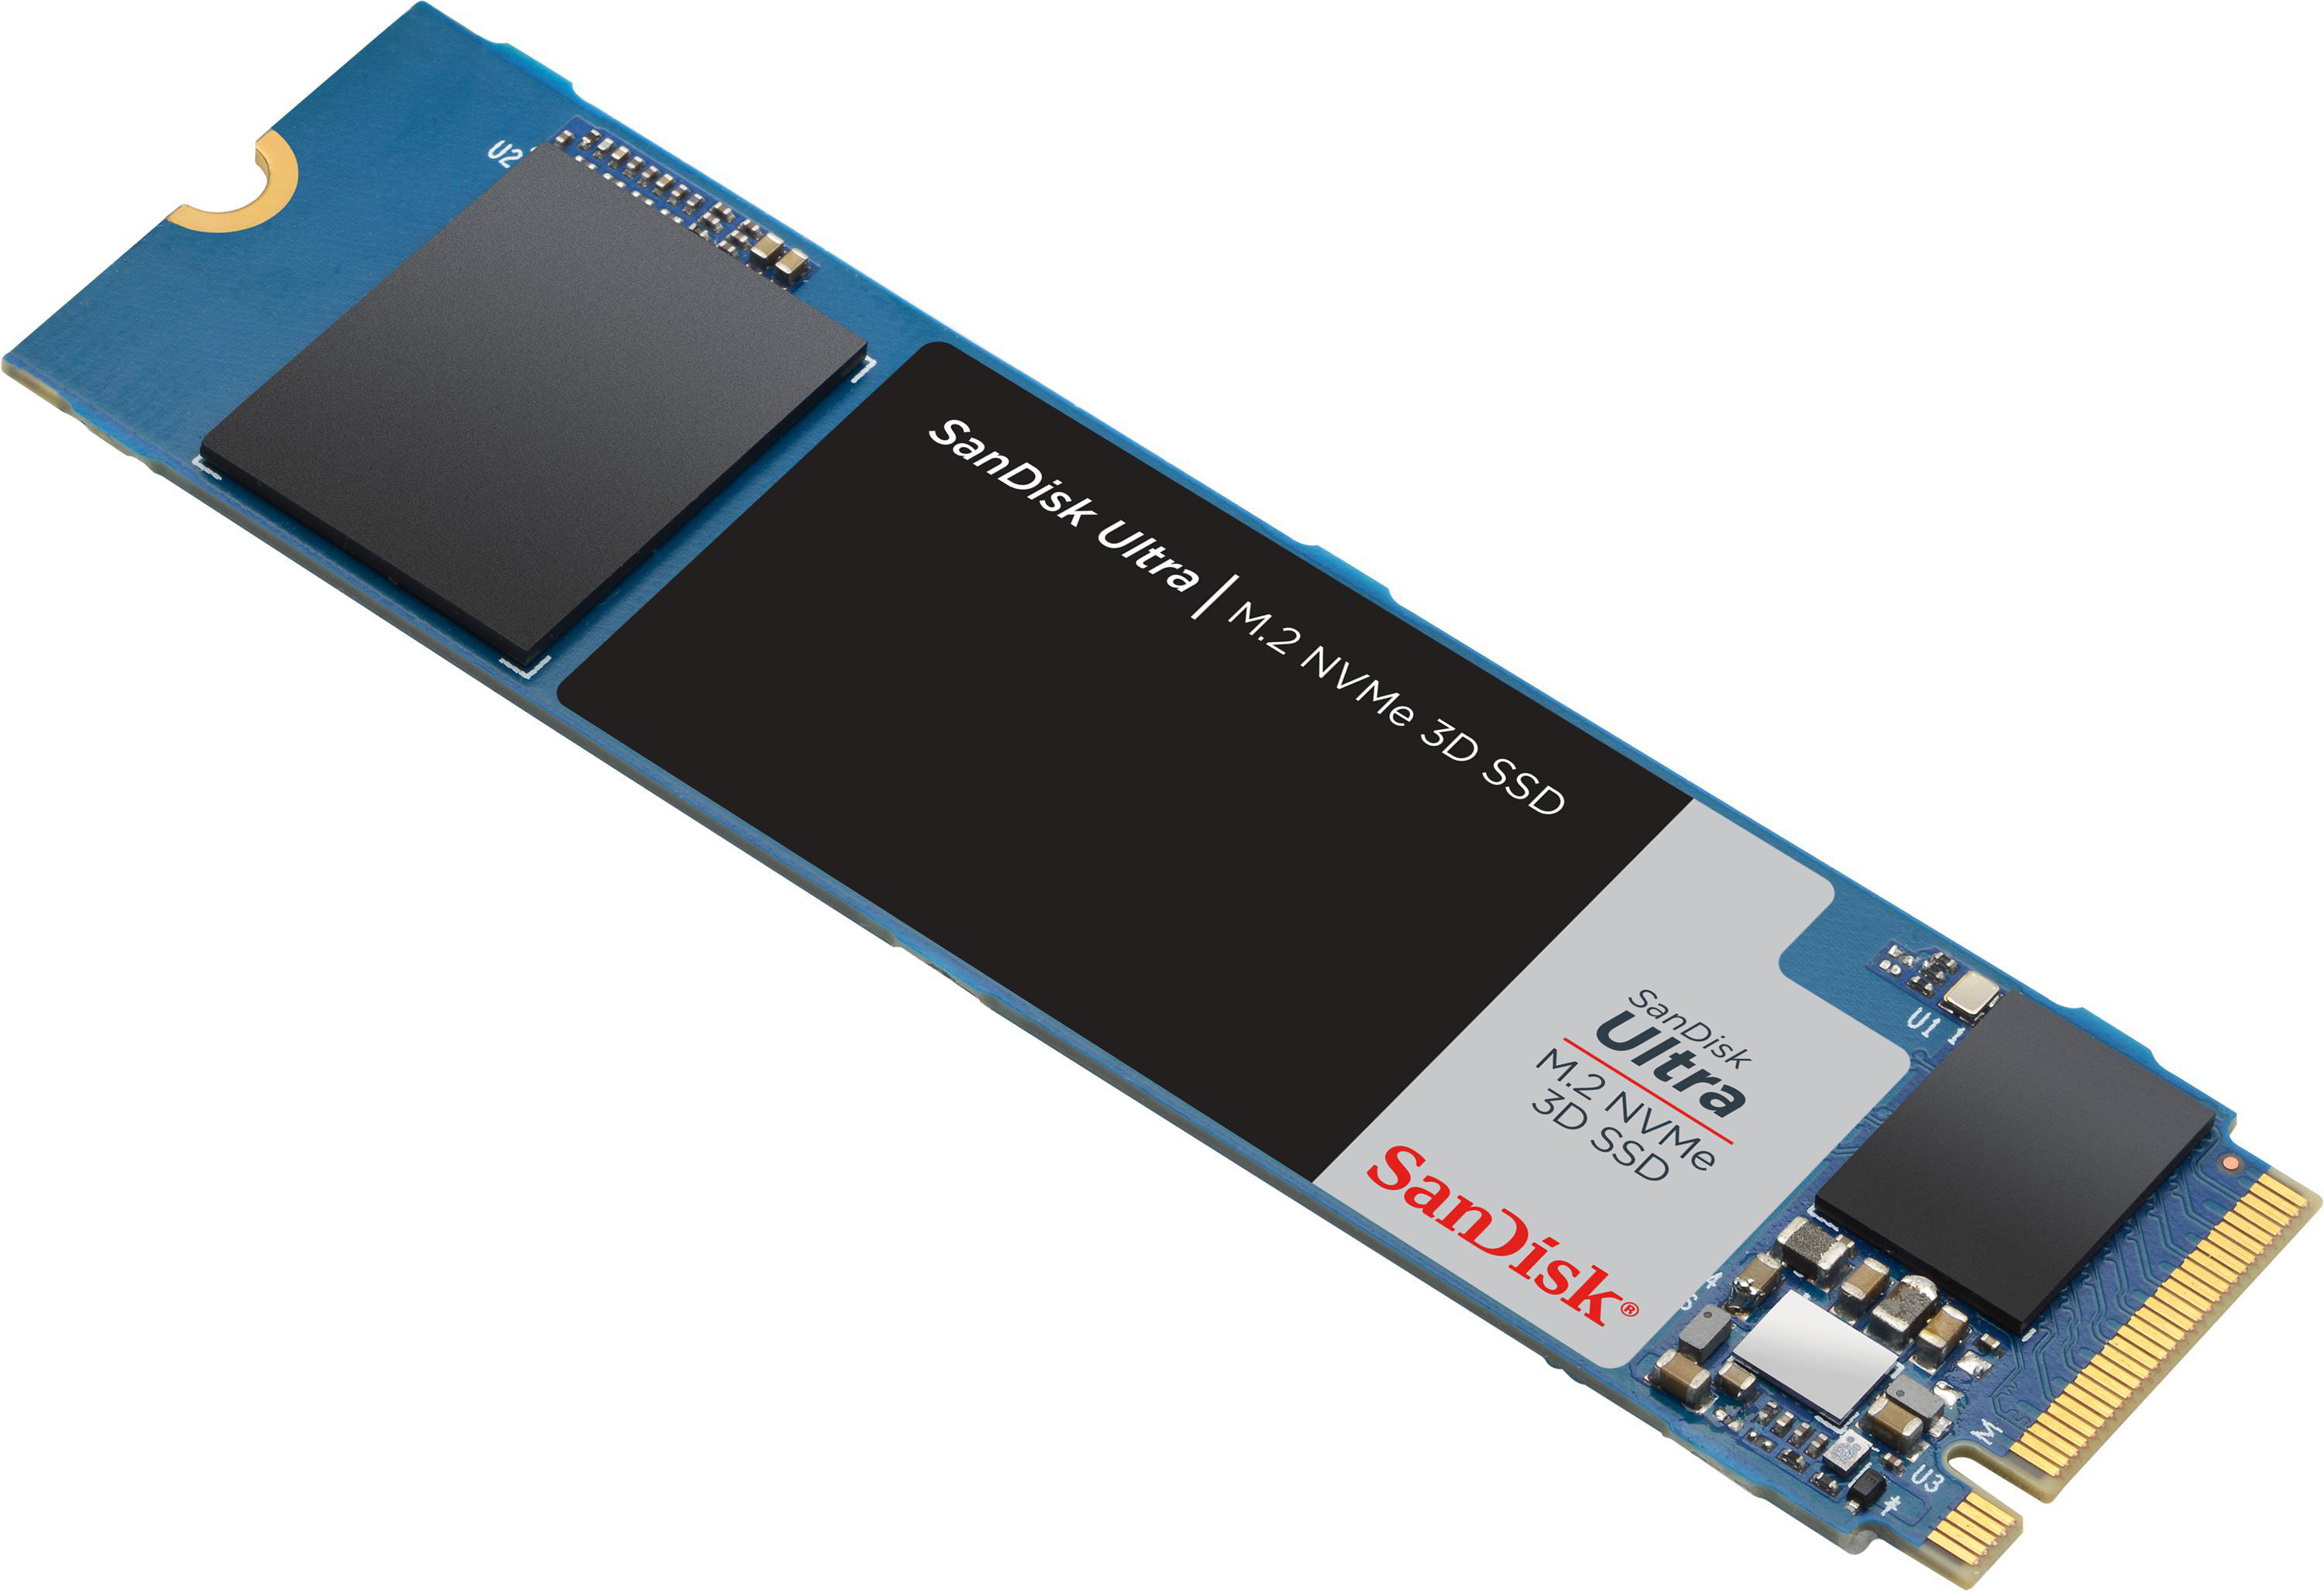 SANDISK Ultra 3D SSD NVMe, Speicher, intern M.2 GB Interner via 500 Speicher